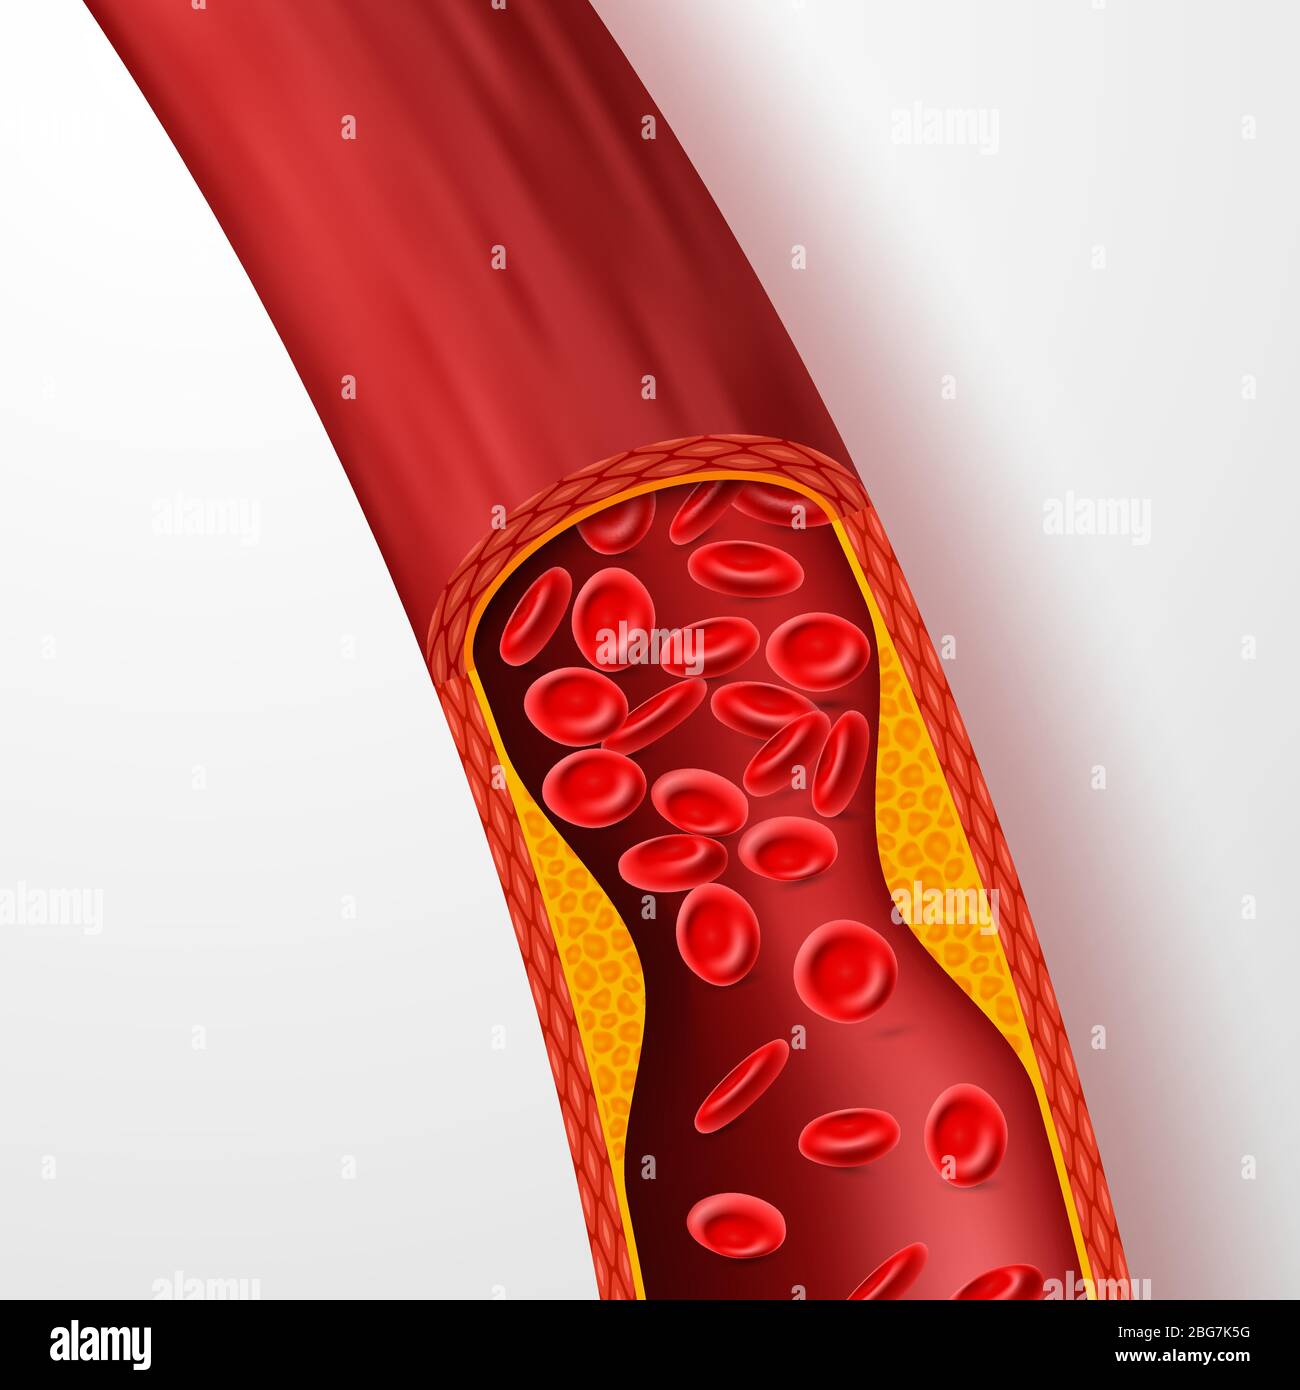 Vaso sanguigno bloccato, arteria con trombi di colesterolo. illustrazione vettoriale della vena 3d con coagulo. Sangue arterioso medico, malattia da colesterolo, flusso bloccato Illustrazione Vettoriale